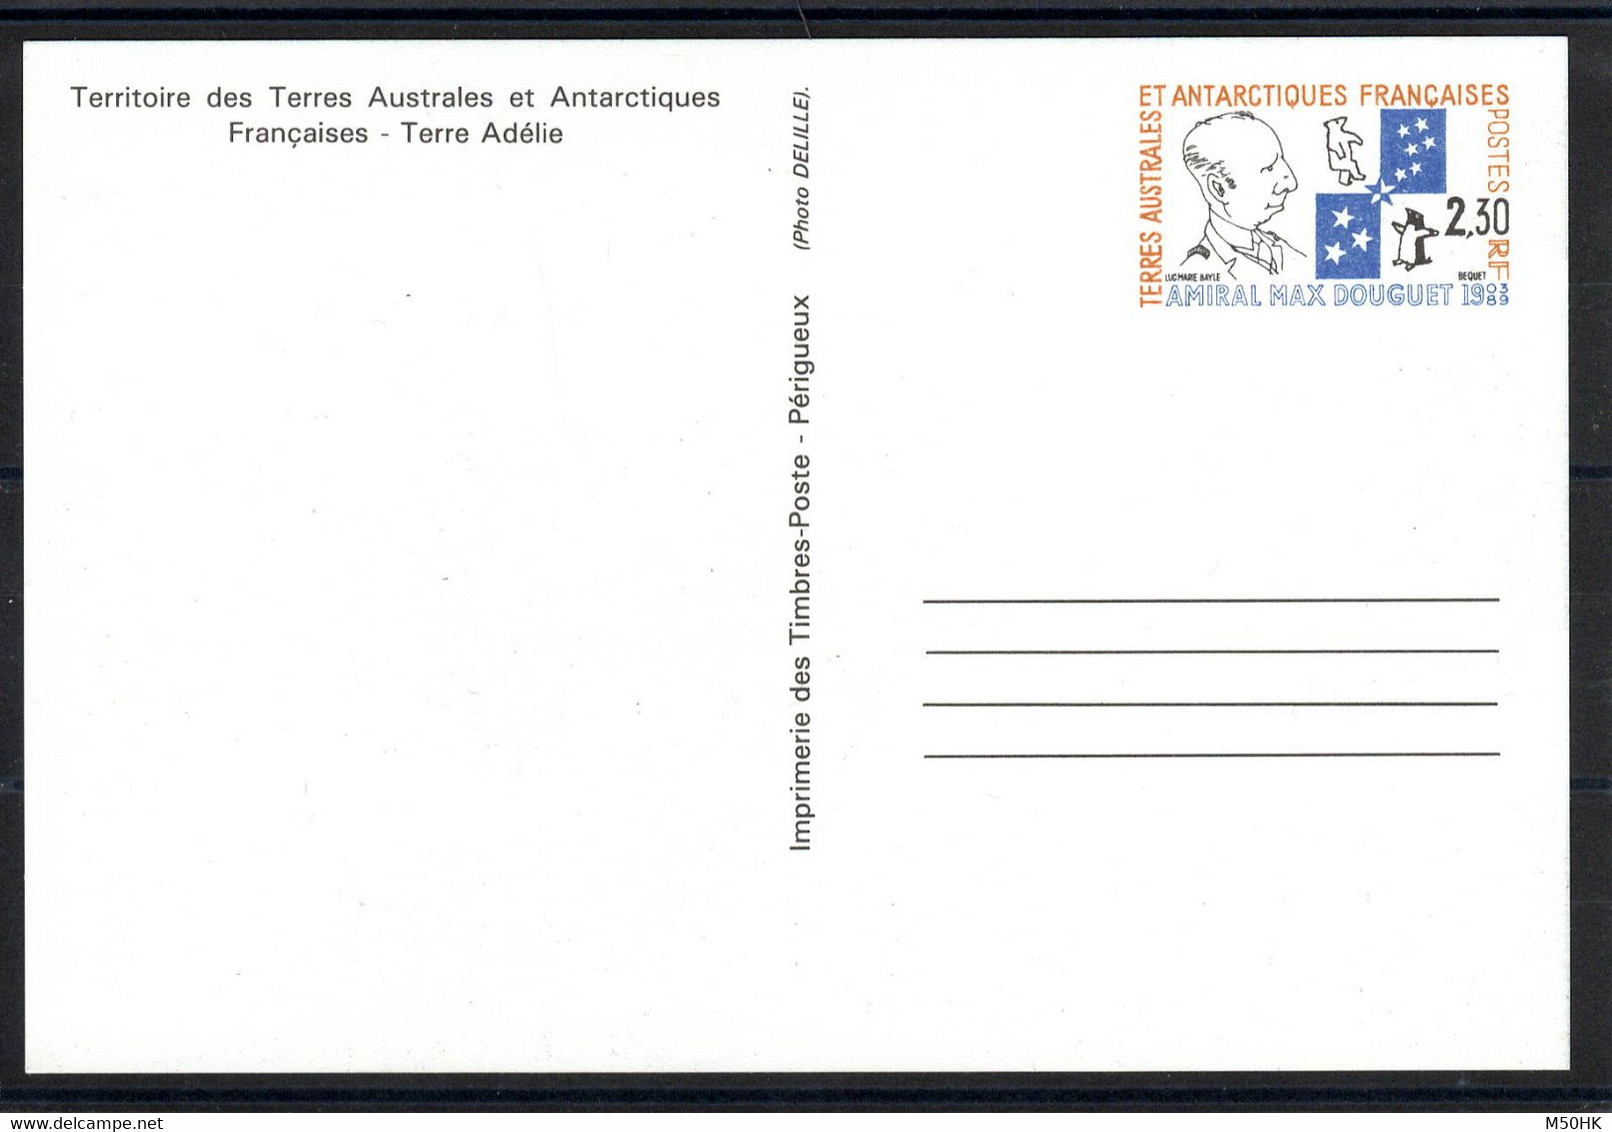 TAAF - Entier Postal 1-CP Neuf 1991 - Ganzsachen